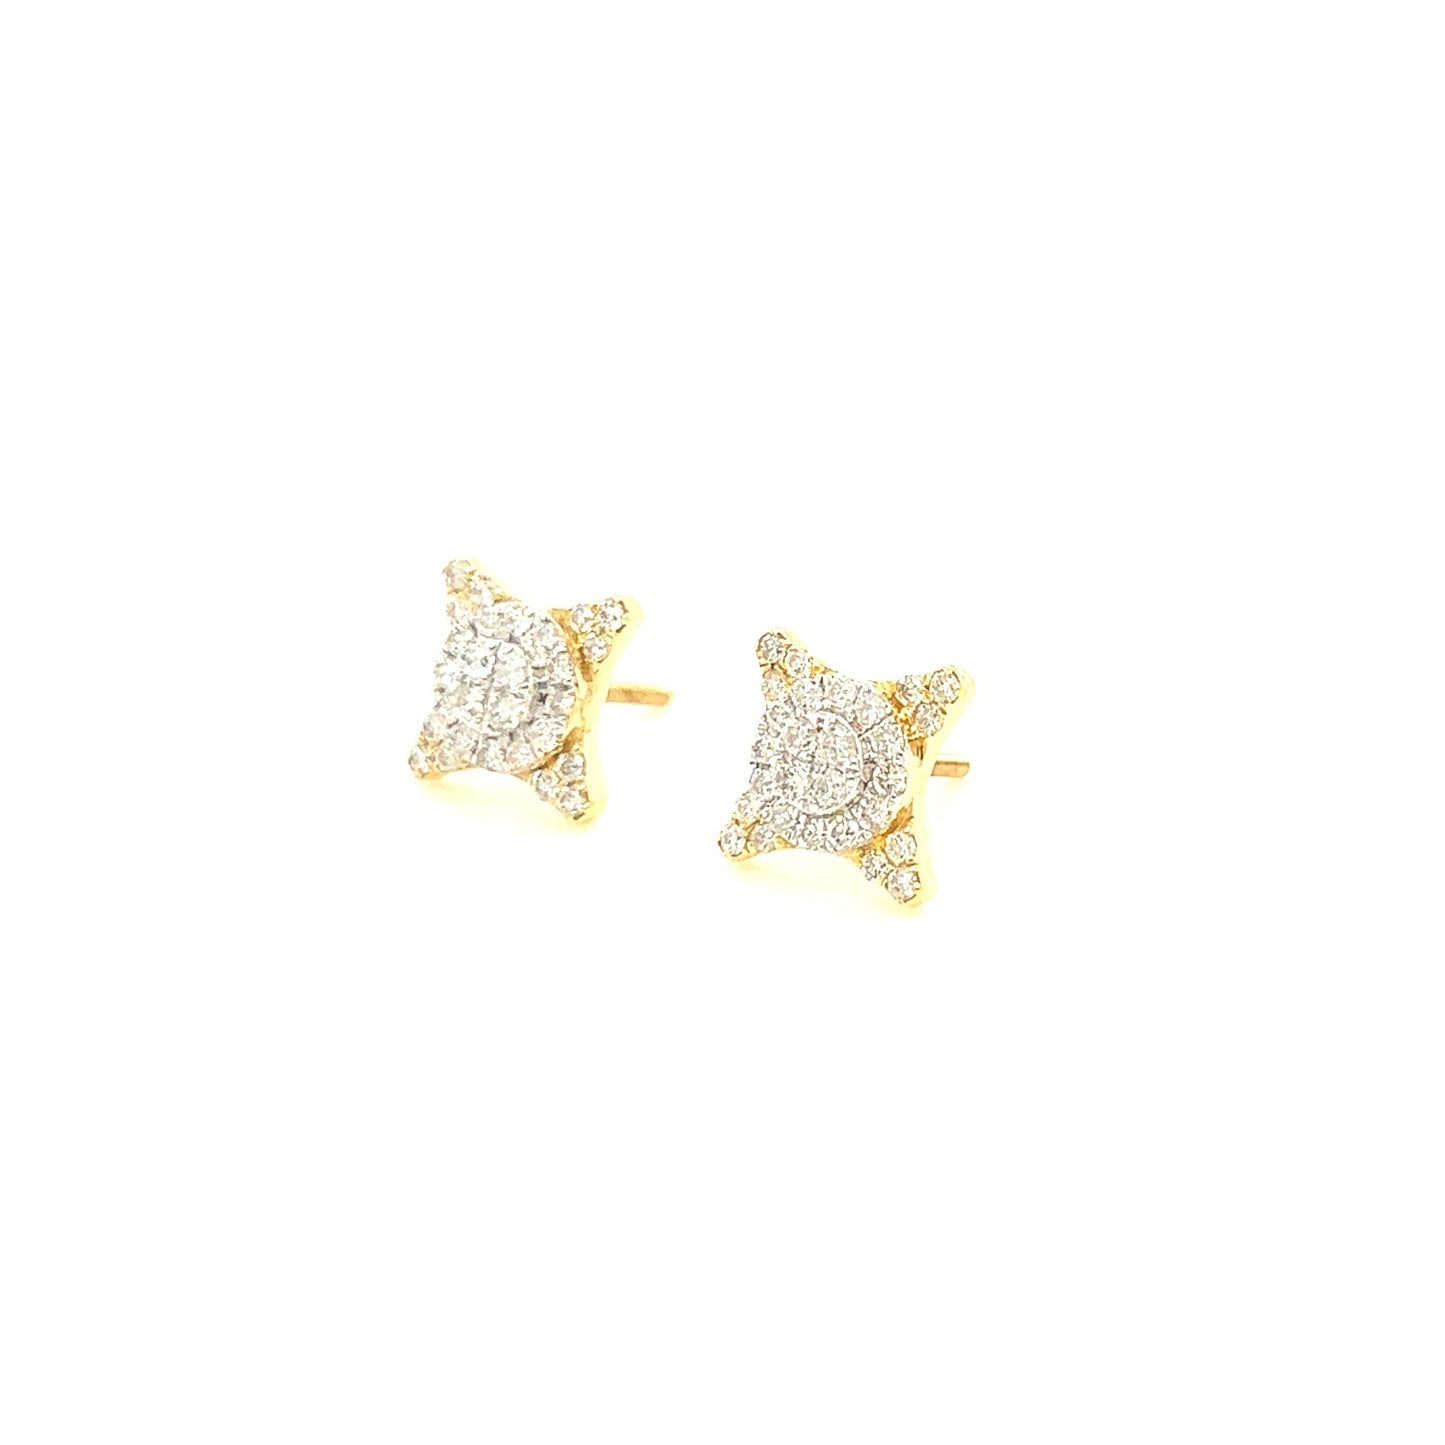 14K Gold Starburst#2 Diamond Earrings